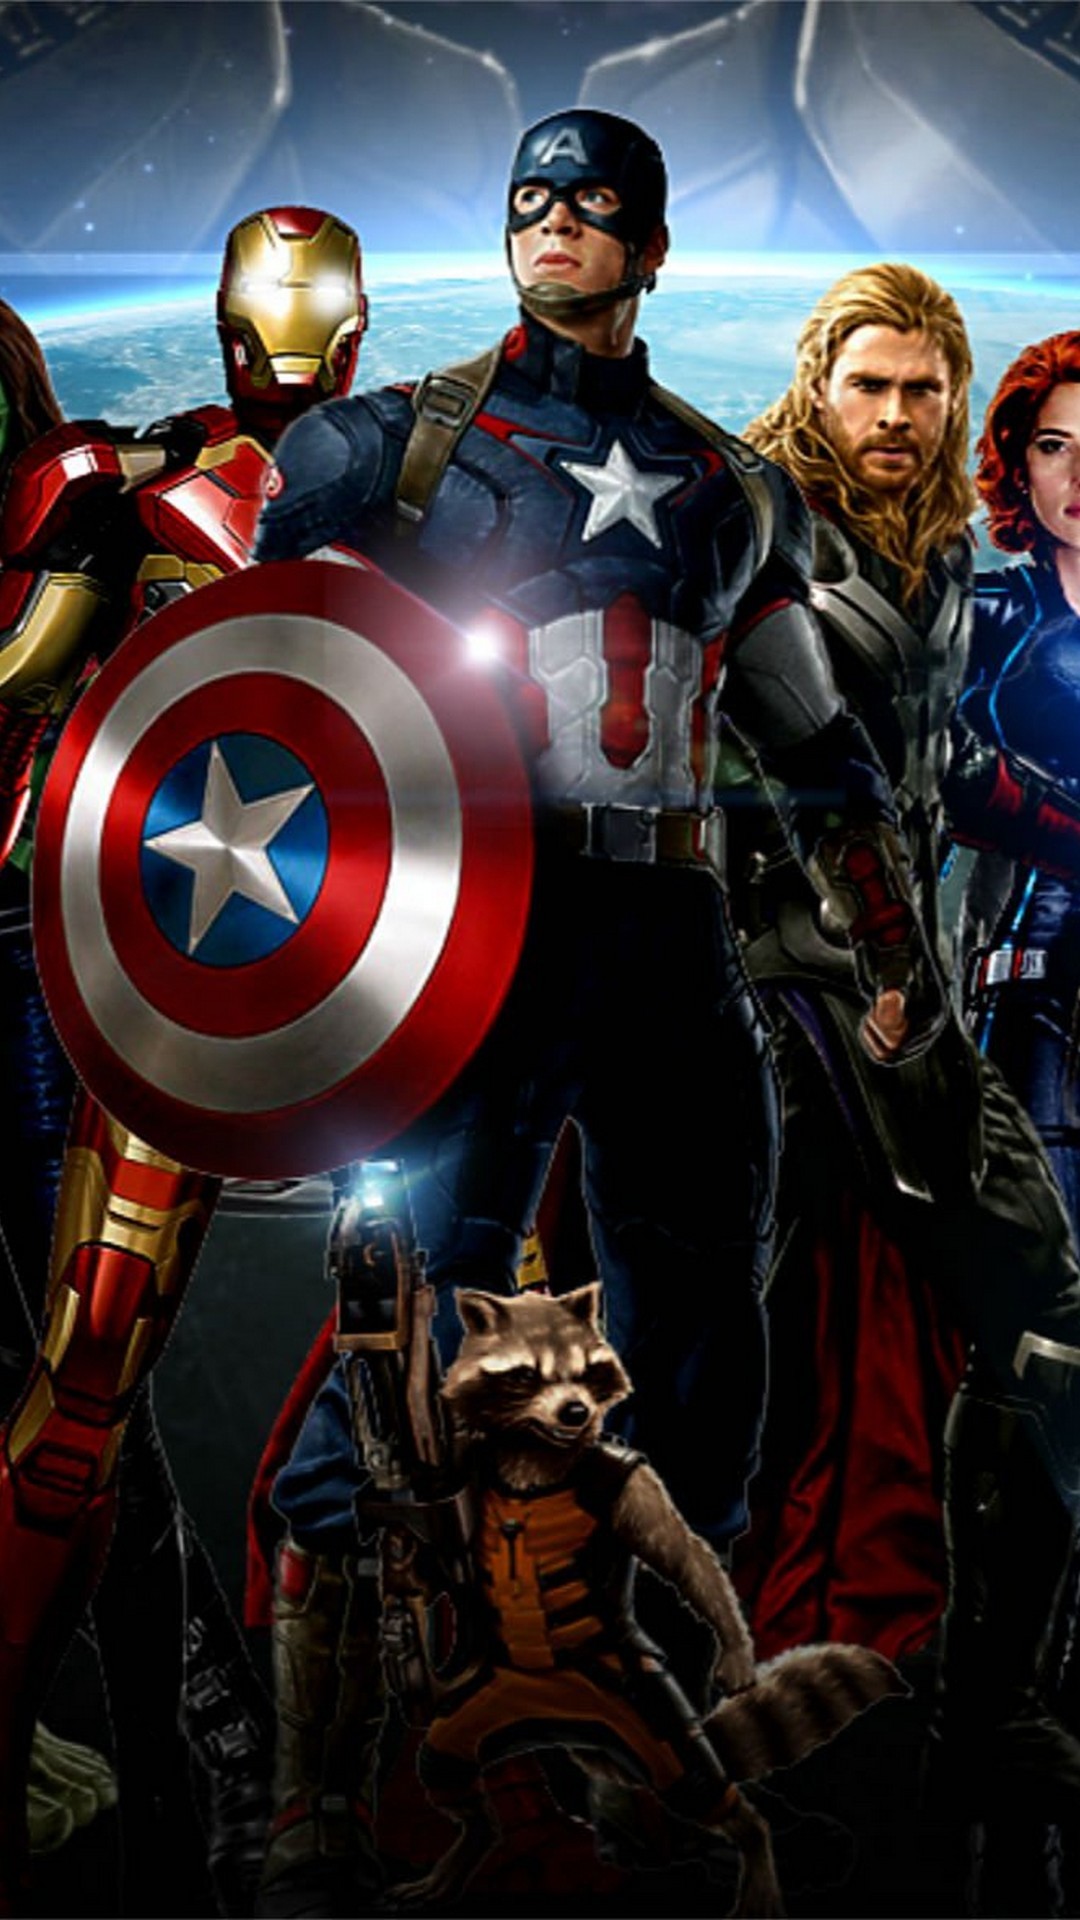 Wallpaper iPhone Avengers Infinity War resolution 1080x1920